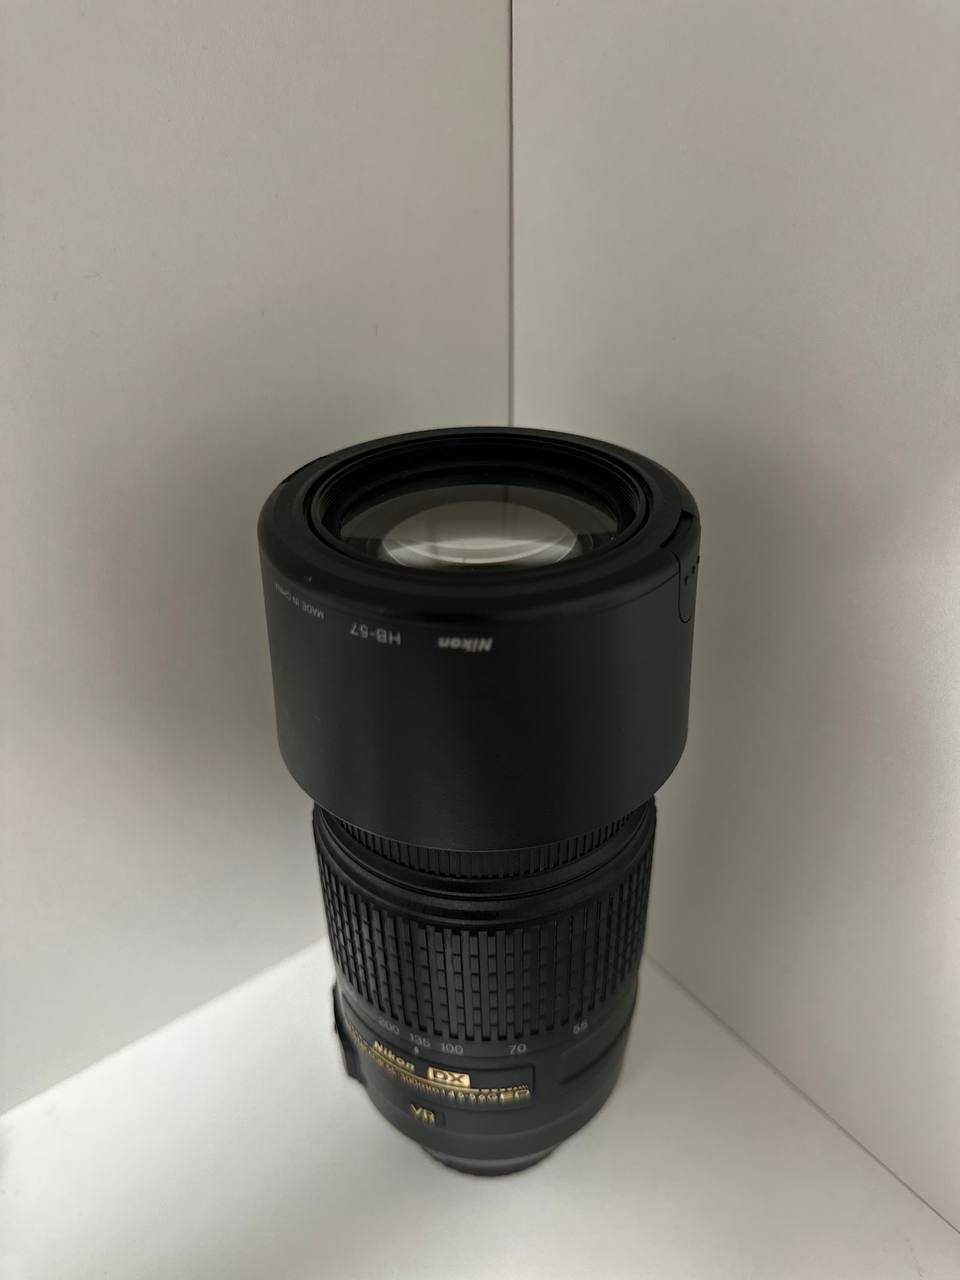 Продам объектив
Nikon 55-300mm f/4.5-5.6G ED DX VR AF-S Nikkor